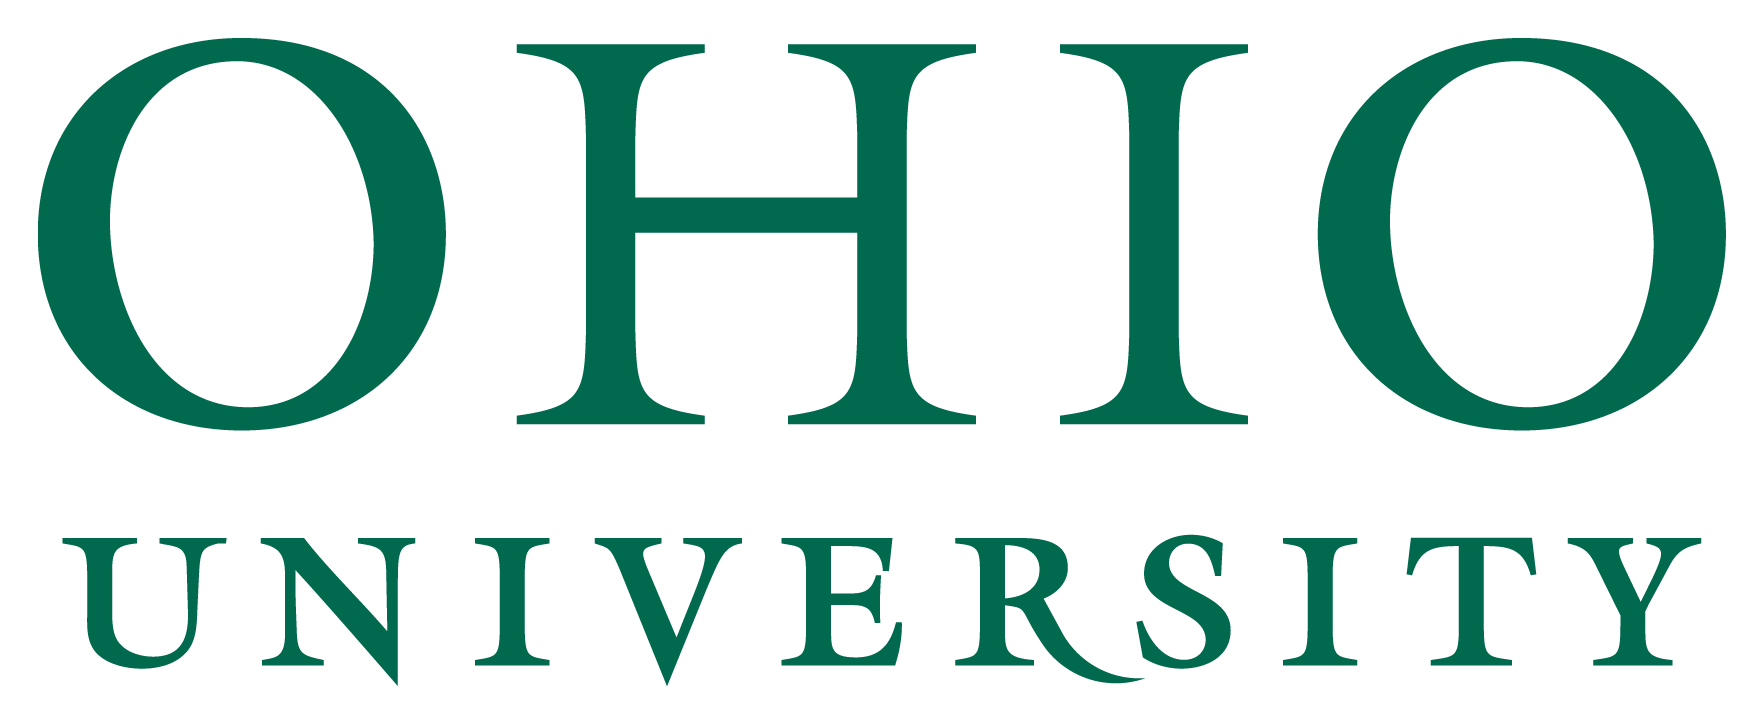 Ohio University Primary Wordmark logo